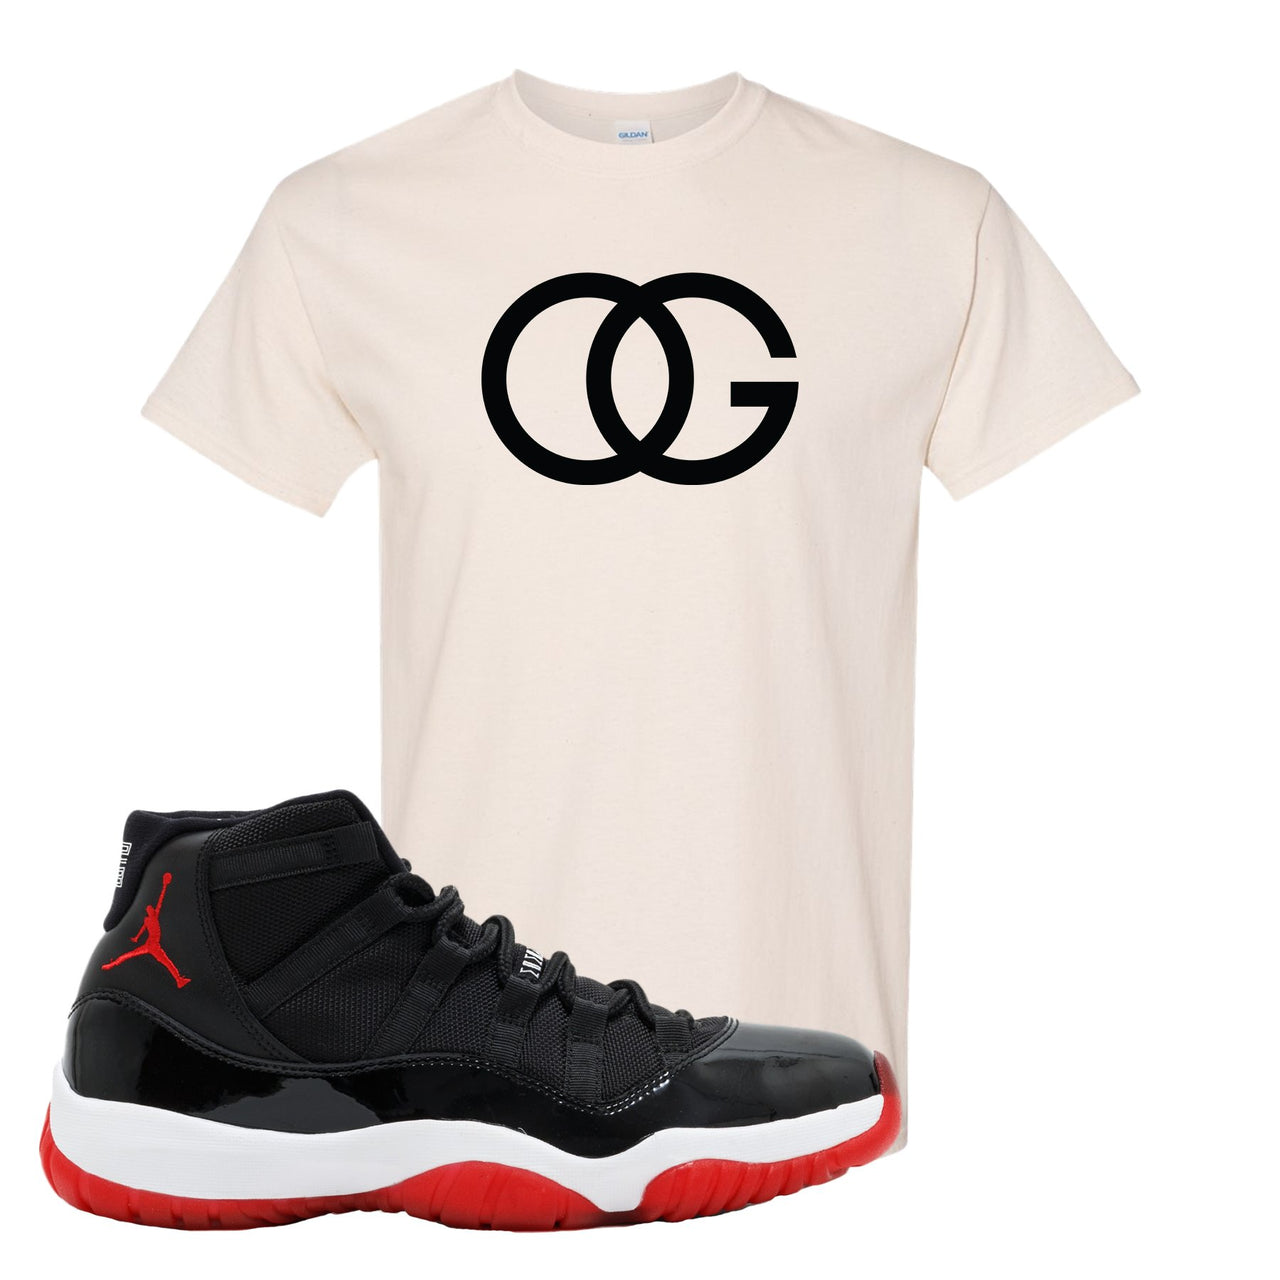 Jordan 11 Bred OG White Sneaker Hook Up T-Shirt